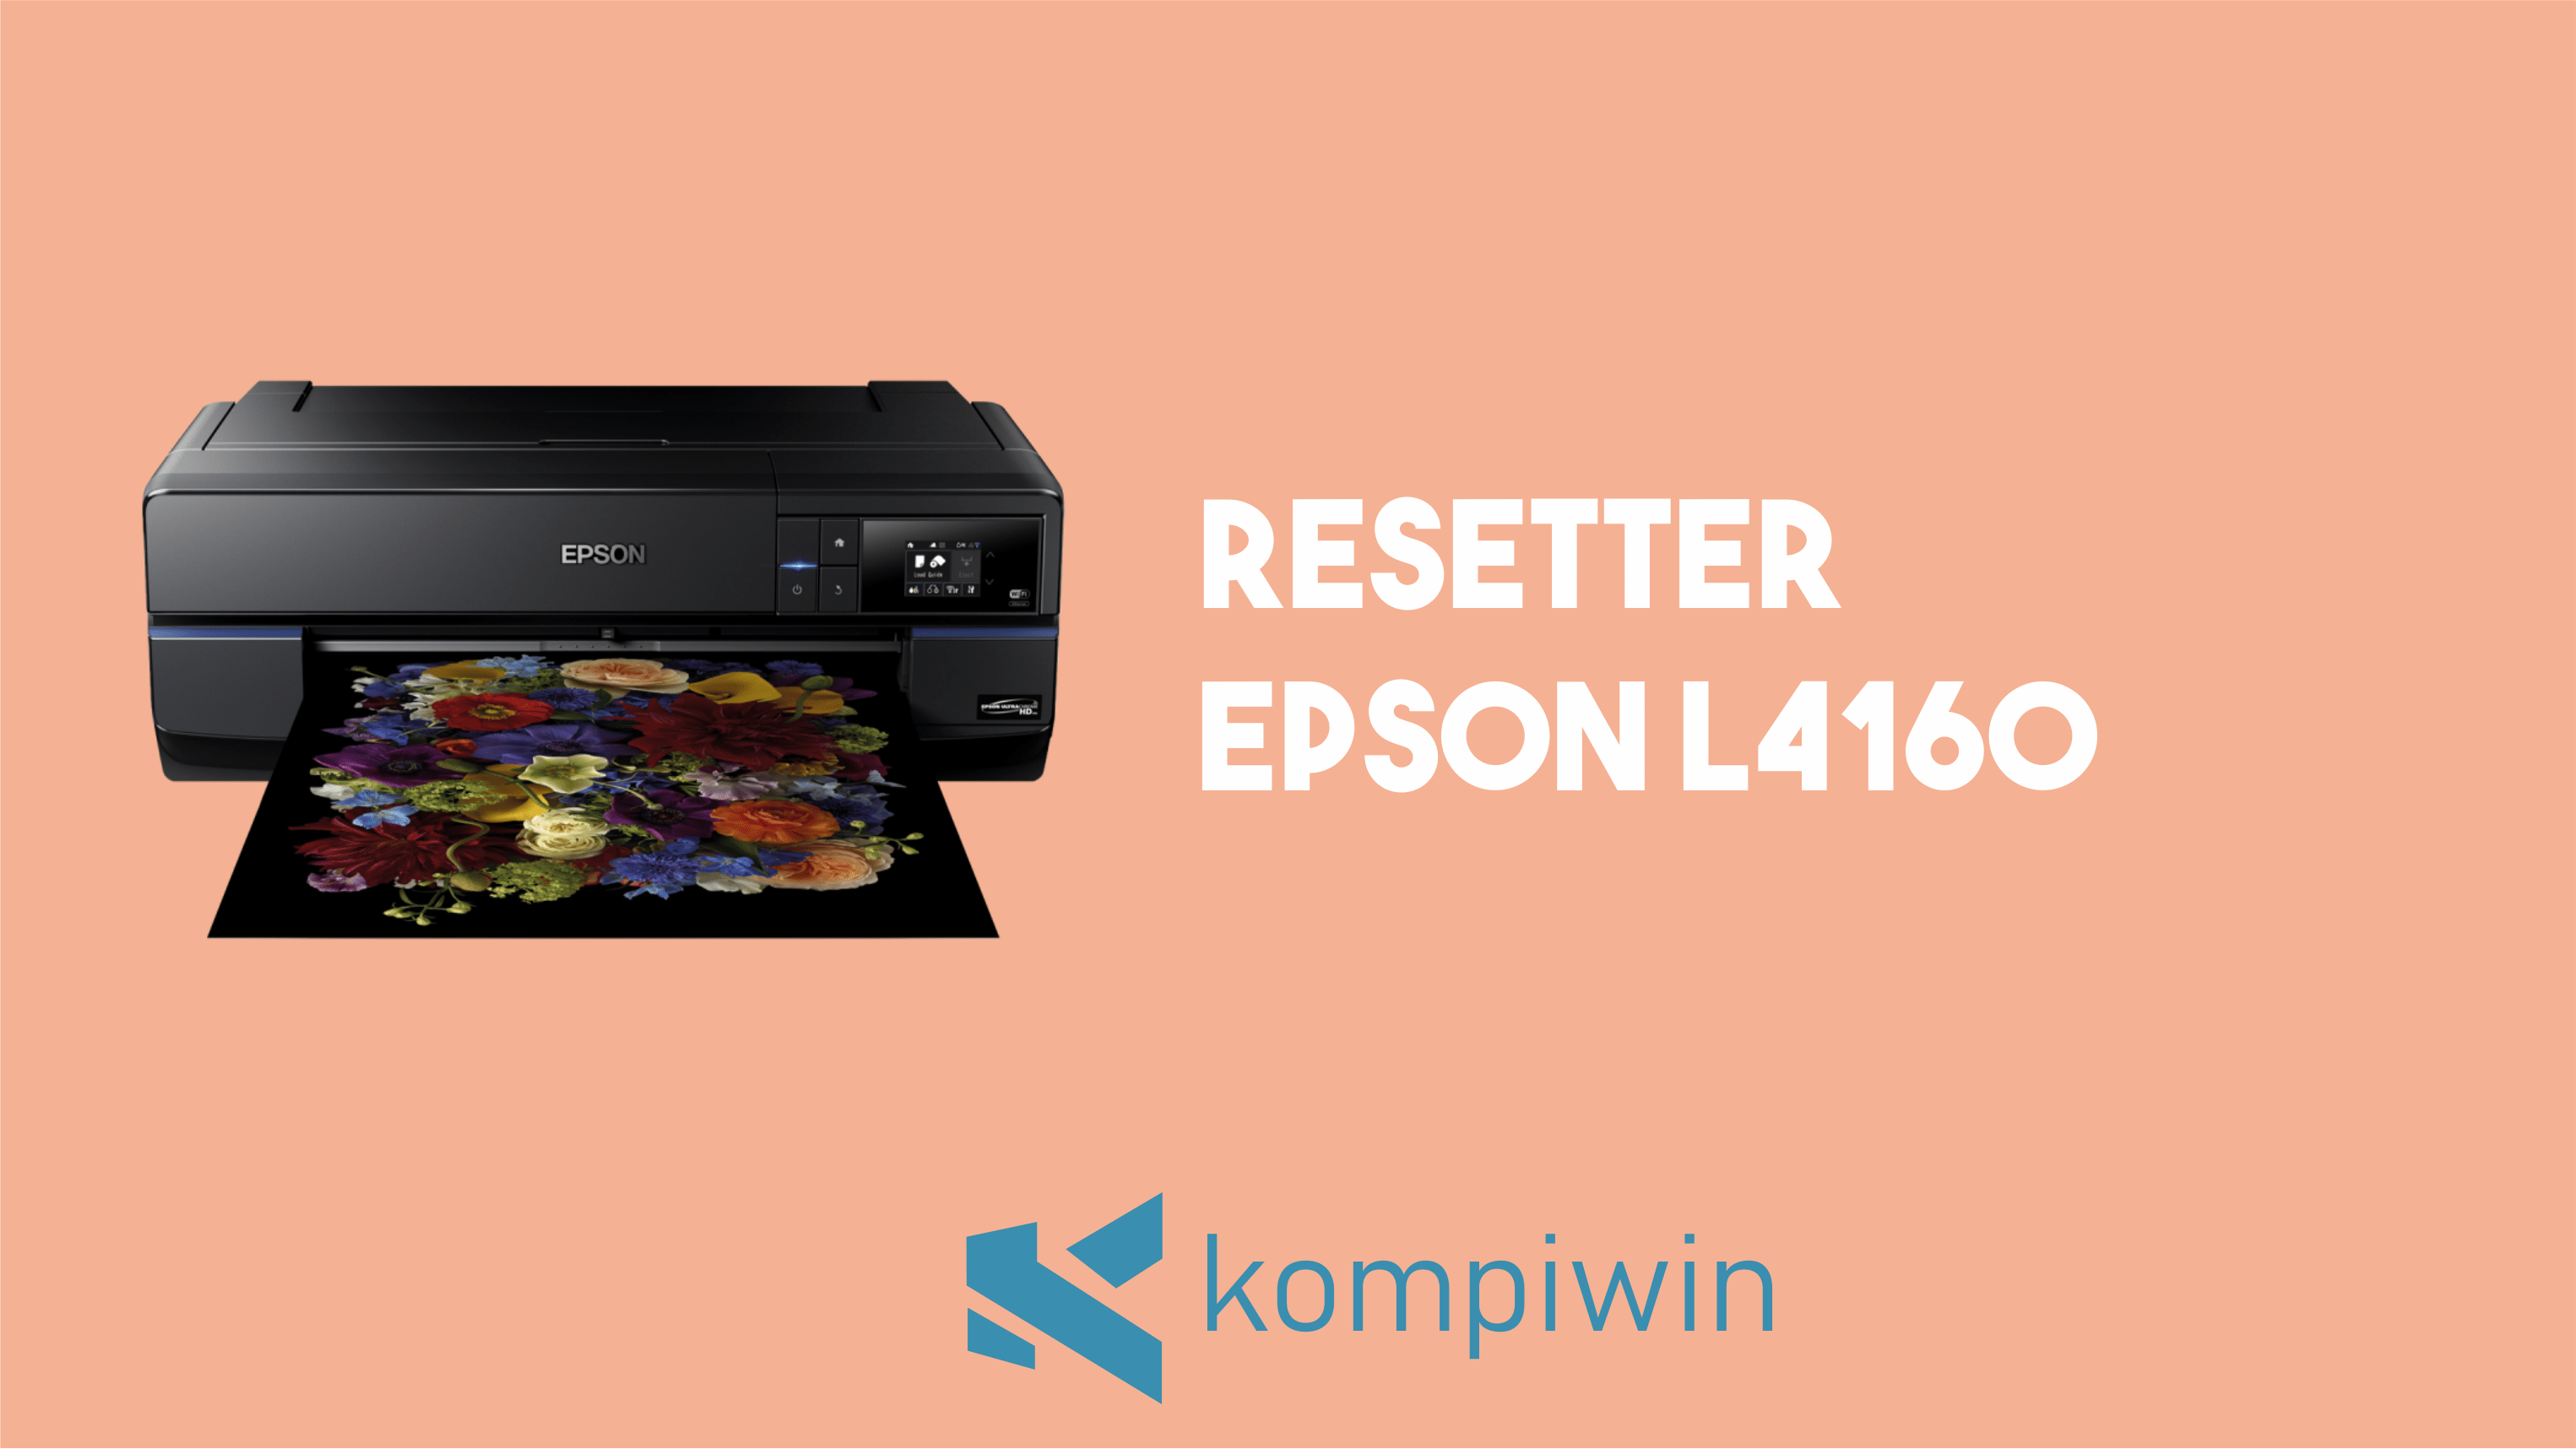 Resetter Epson L4160